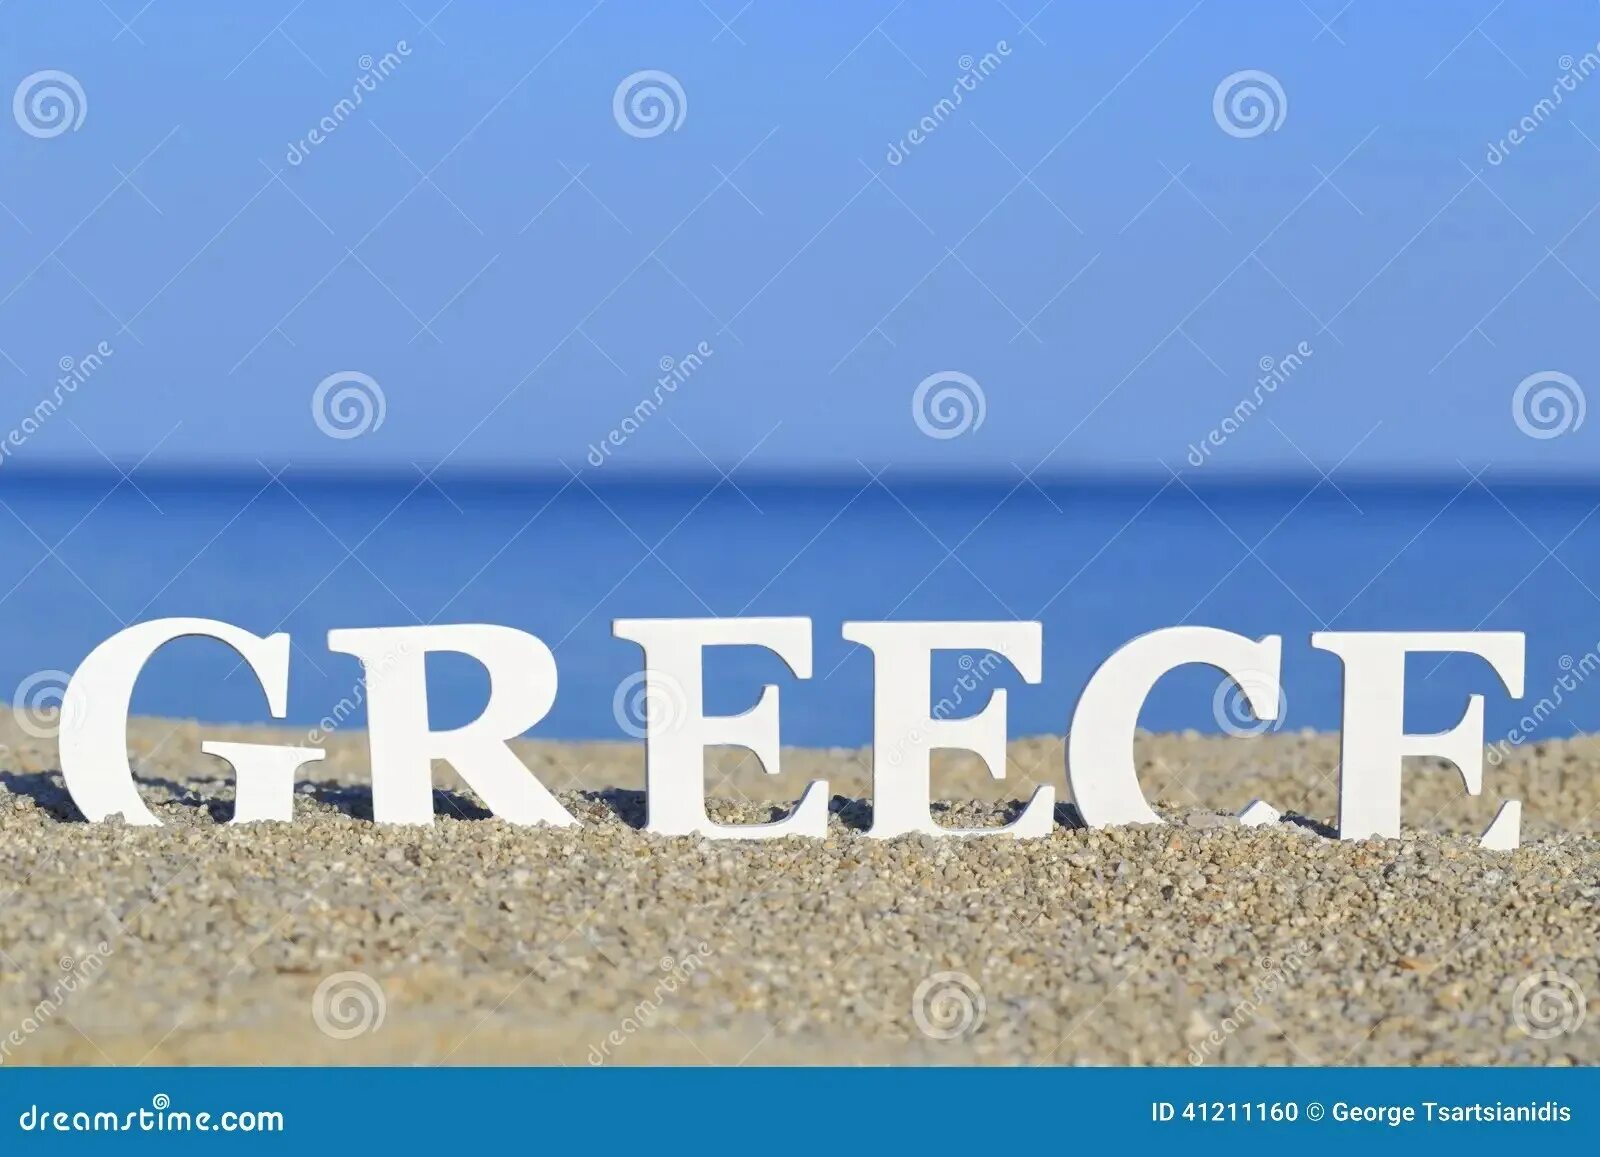 Добро на греческом. Греция слово. Greece надпись. Греция Крит надпись. Греция с надписью Греция.